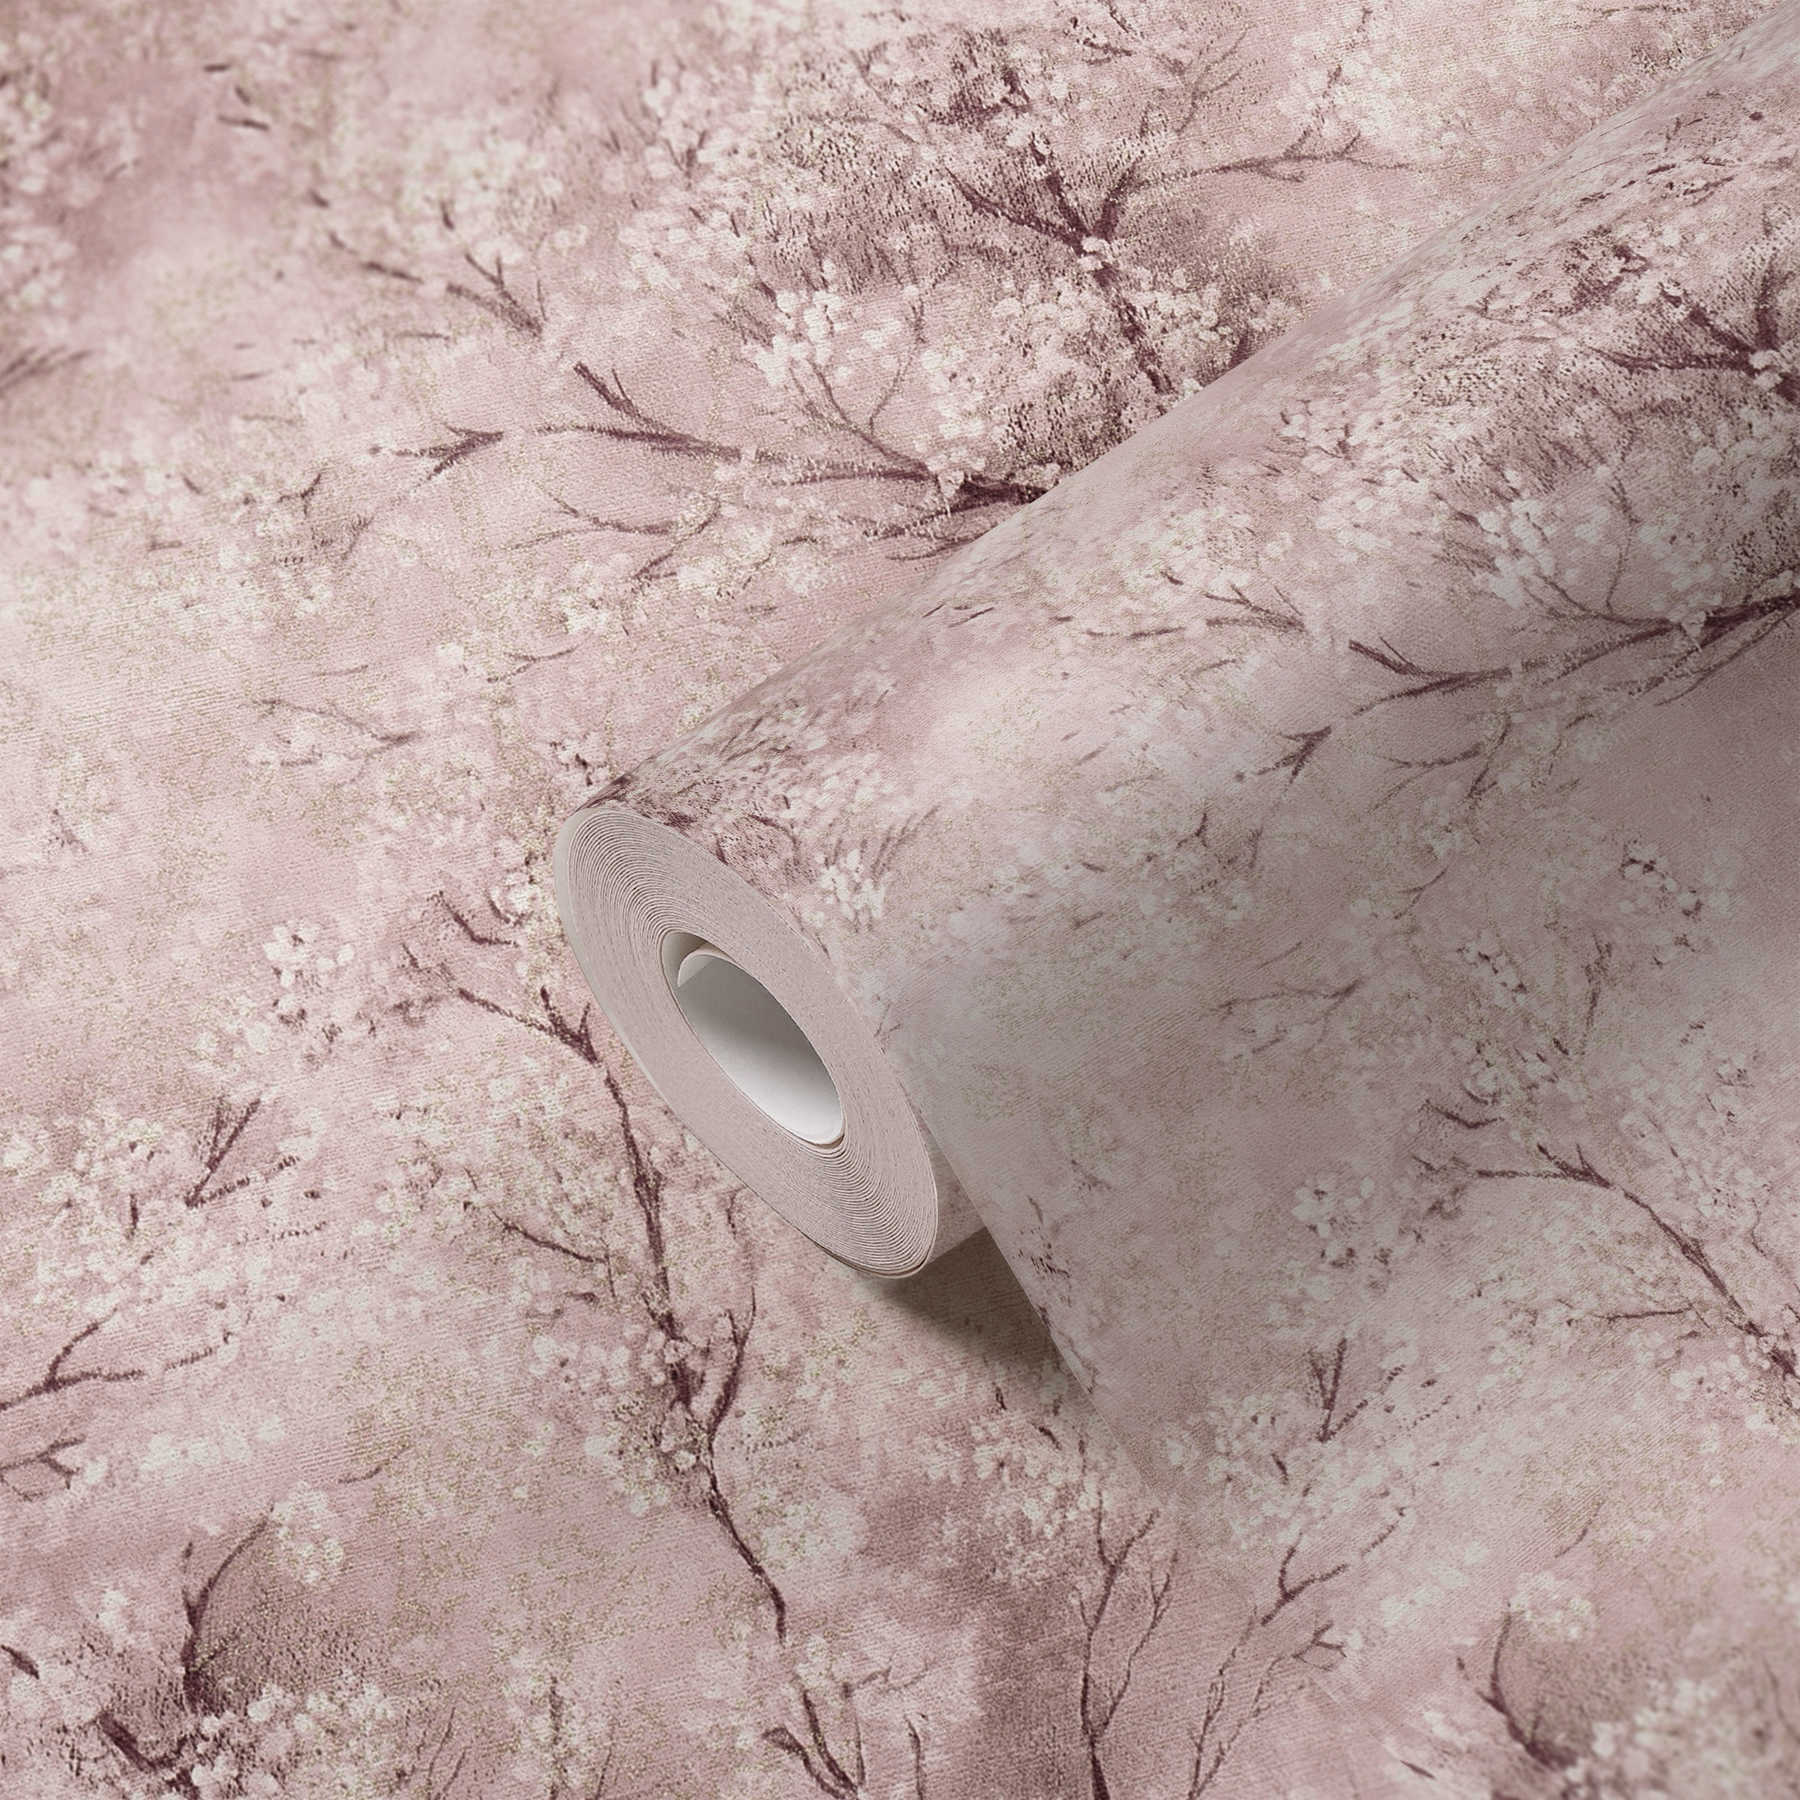             Tapete Kirschblüten Glitzer-Effekt – Rosa, Braun, Weiß
        